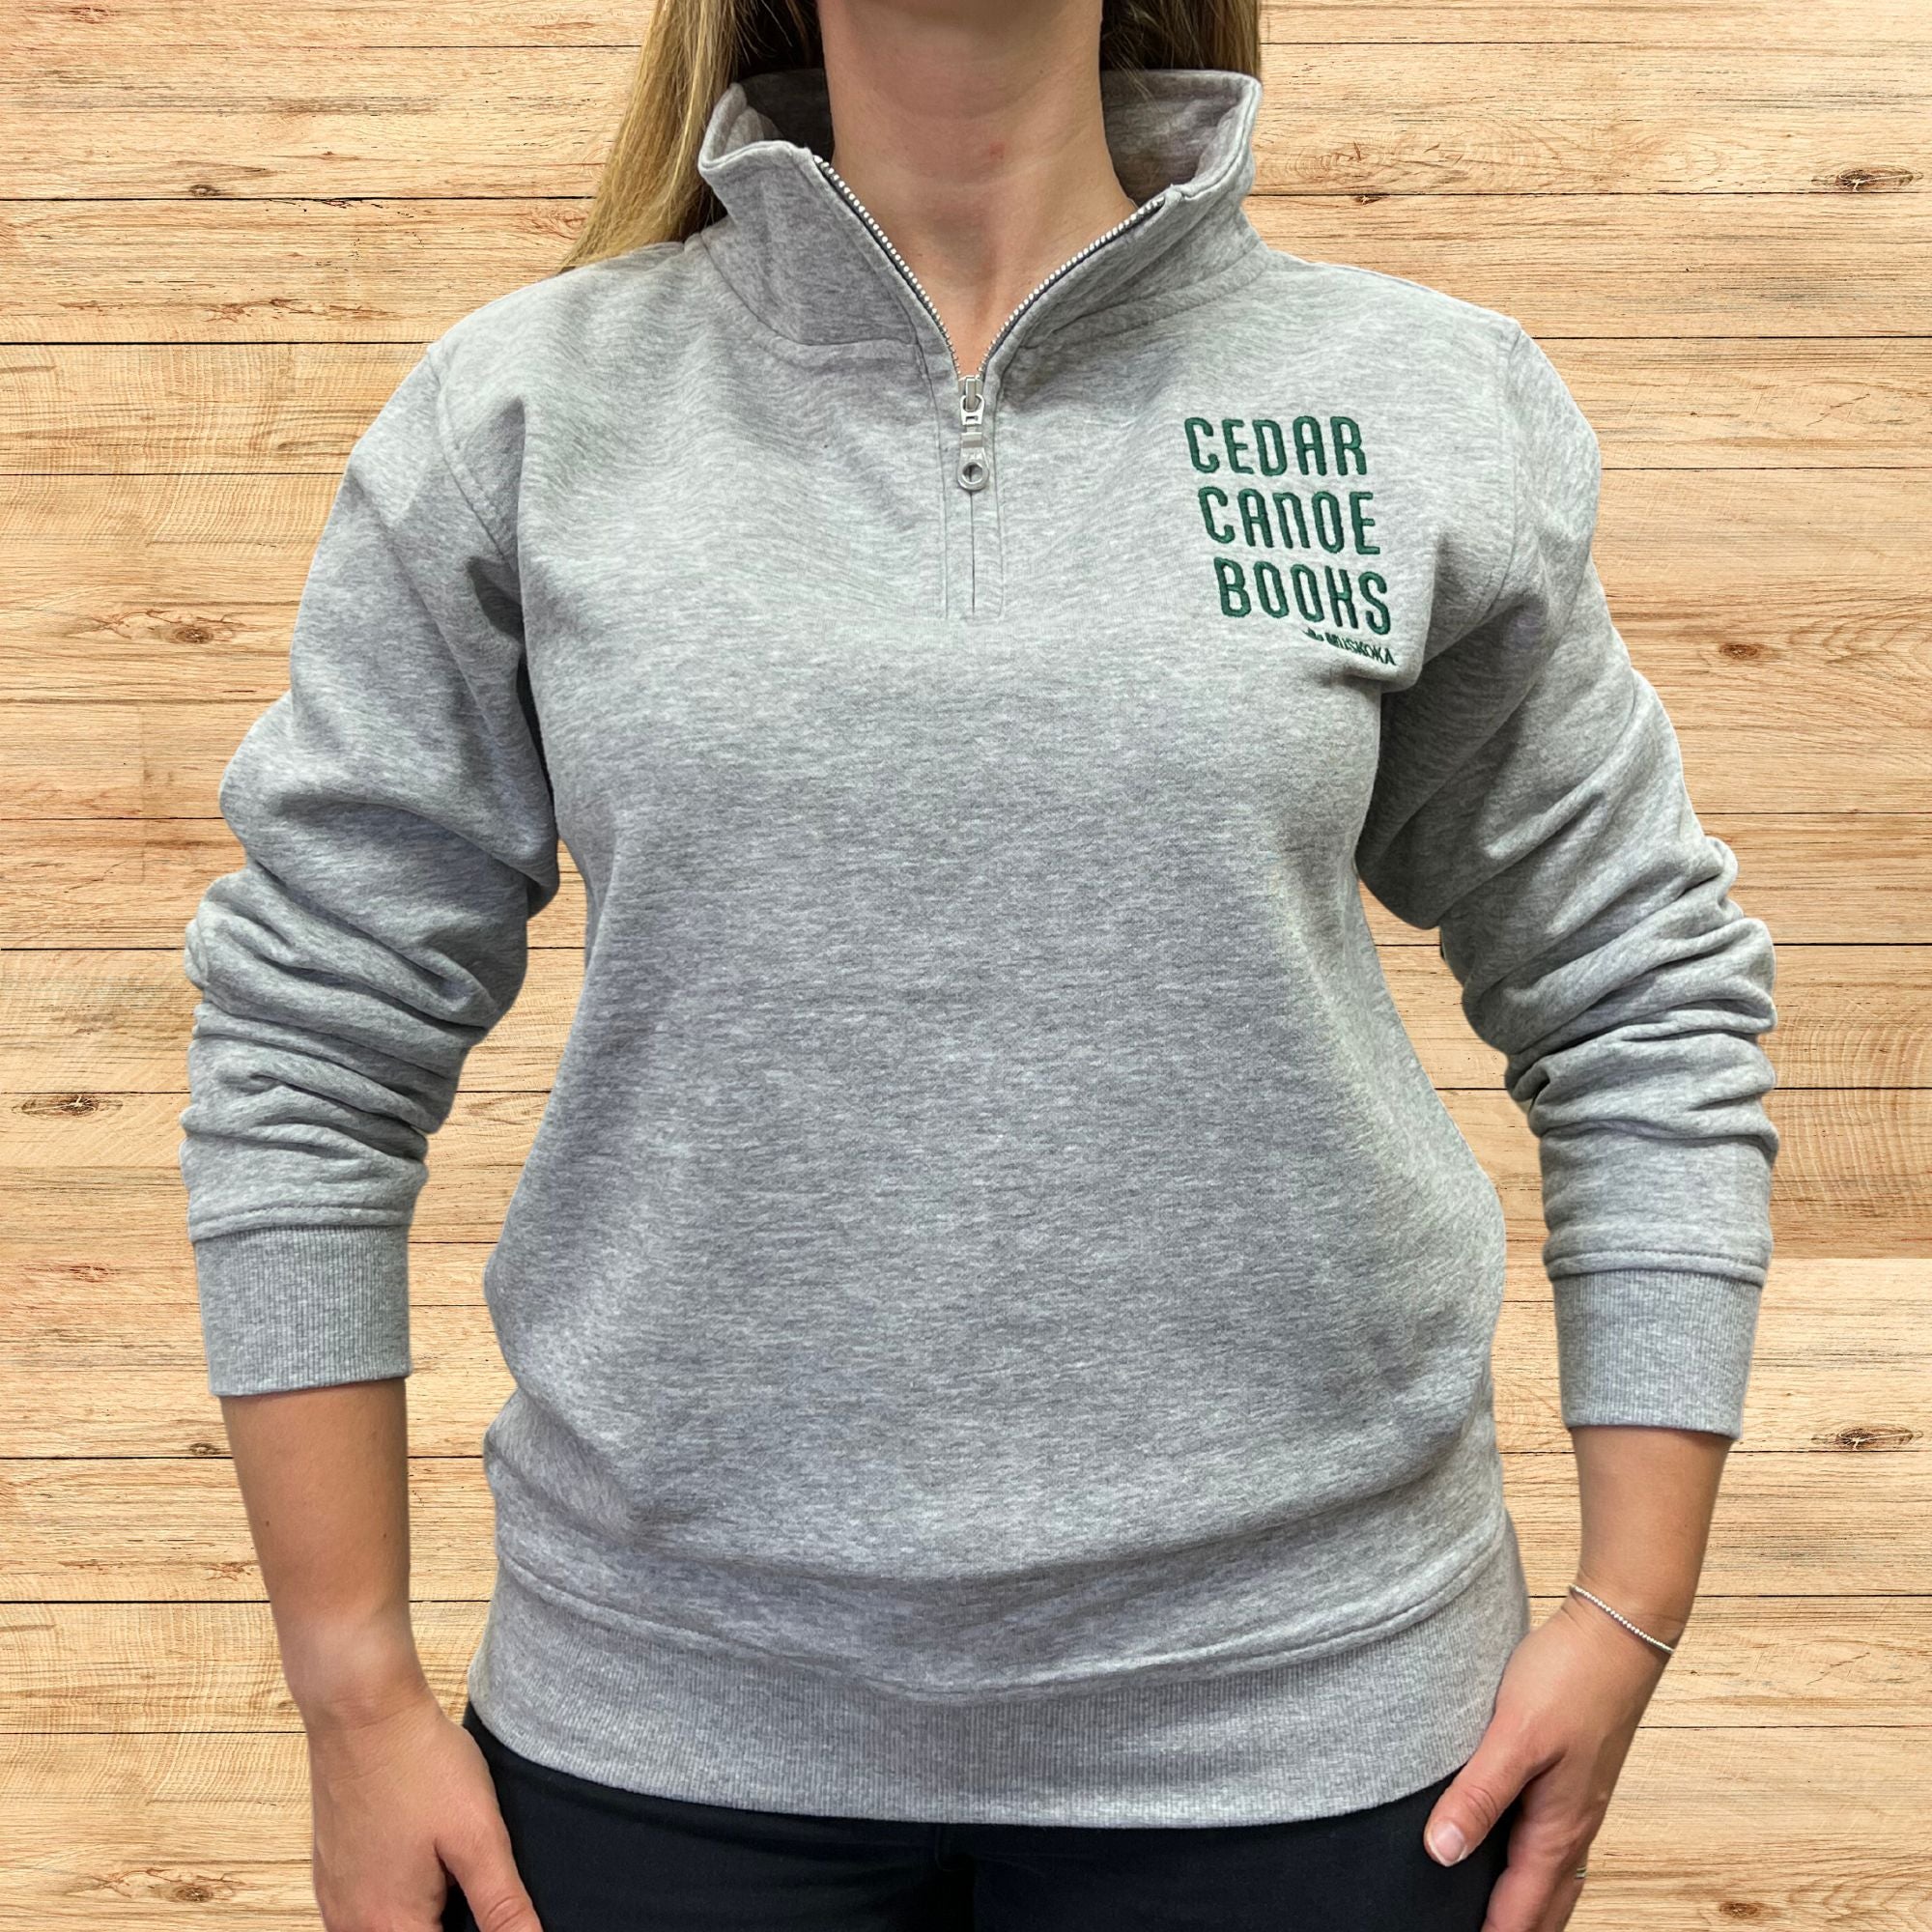 Cedar Canoe Books - 1/4 Zip Sweater